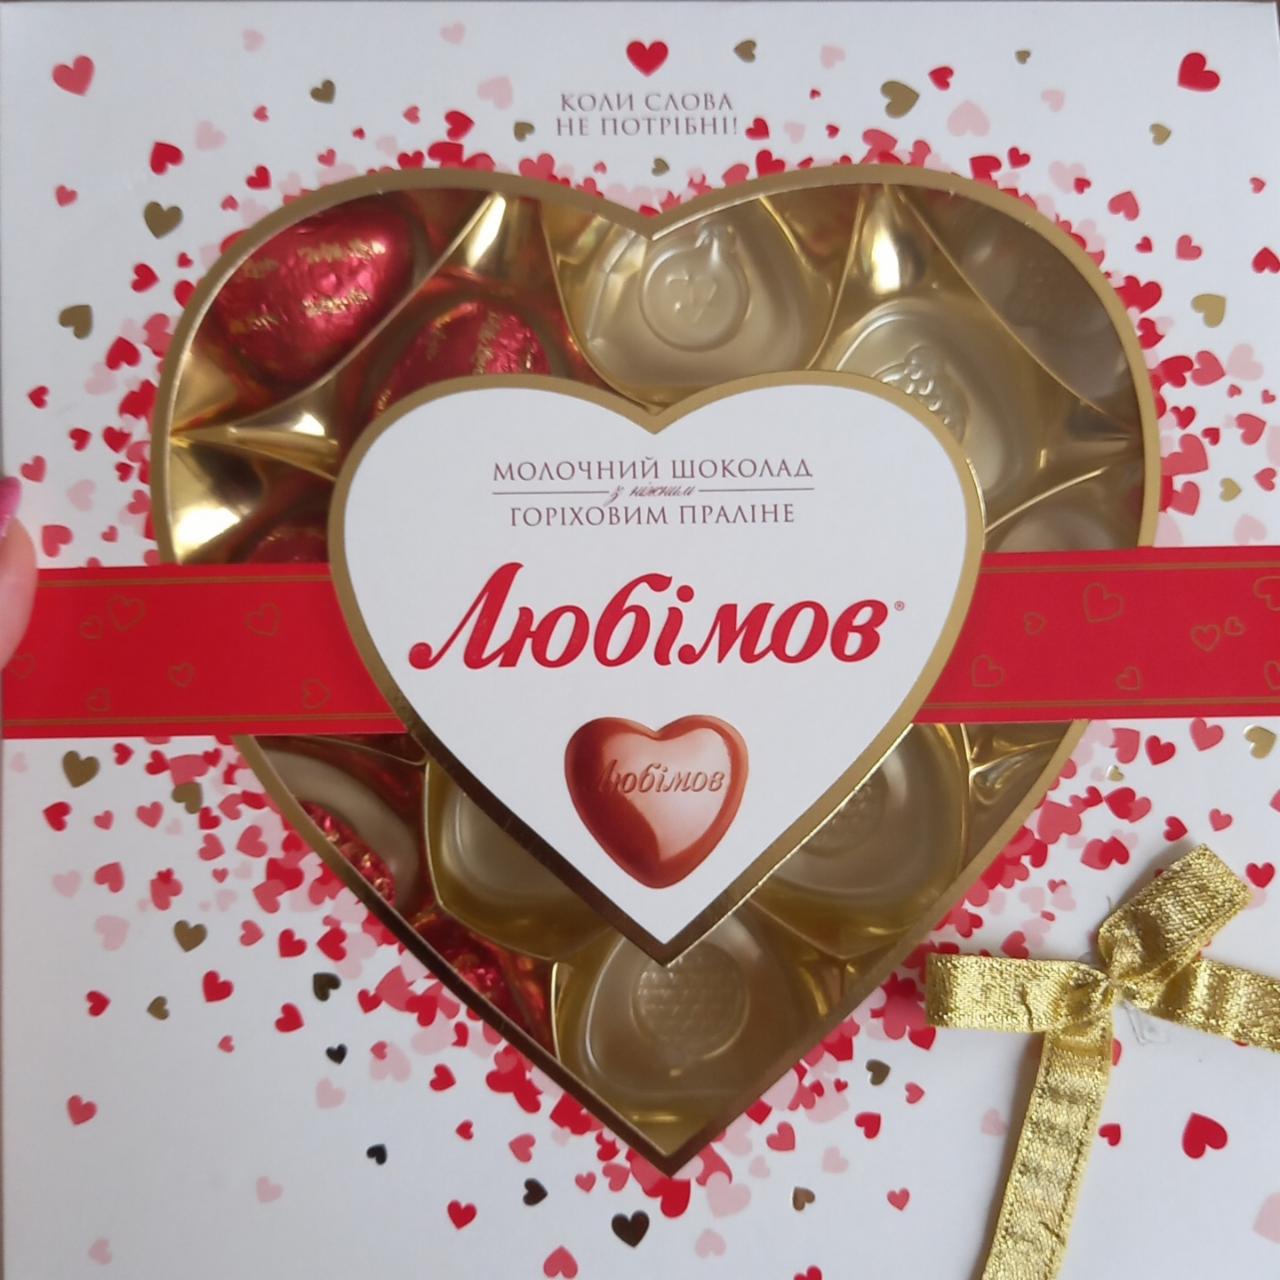 Фото - Цукерки шоколадні з горіховим праліне у молочному шоколаді Любімов